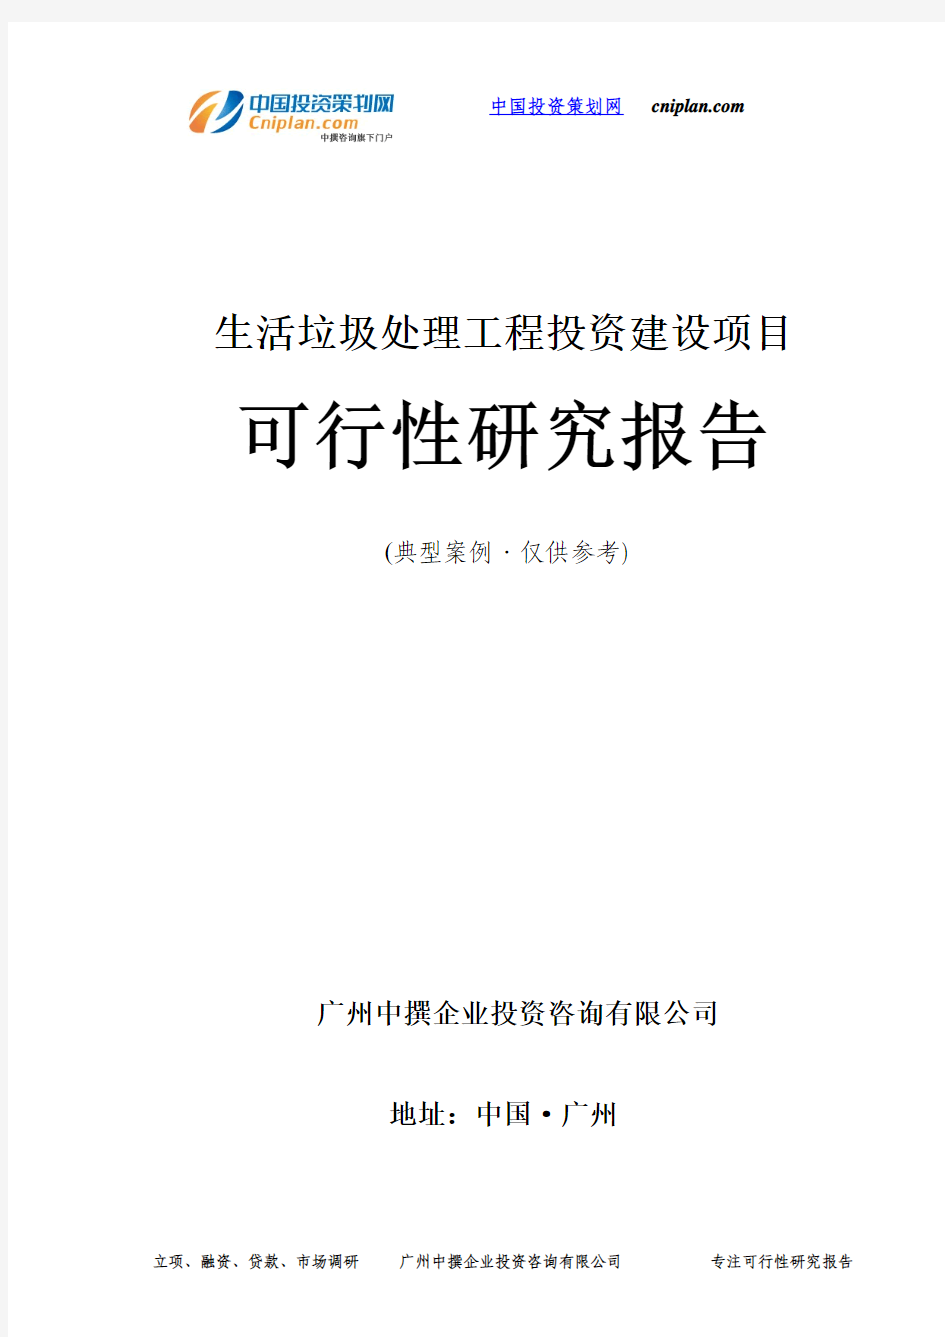 生活垃圾处理工程投资建设项目可行性研究报告-广州中撰咨询